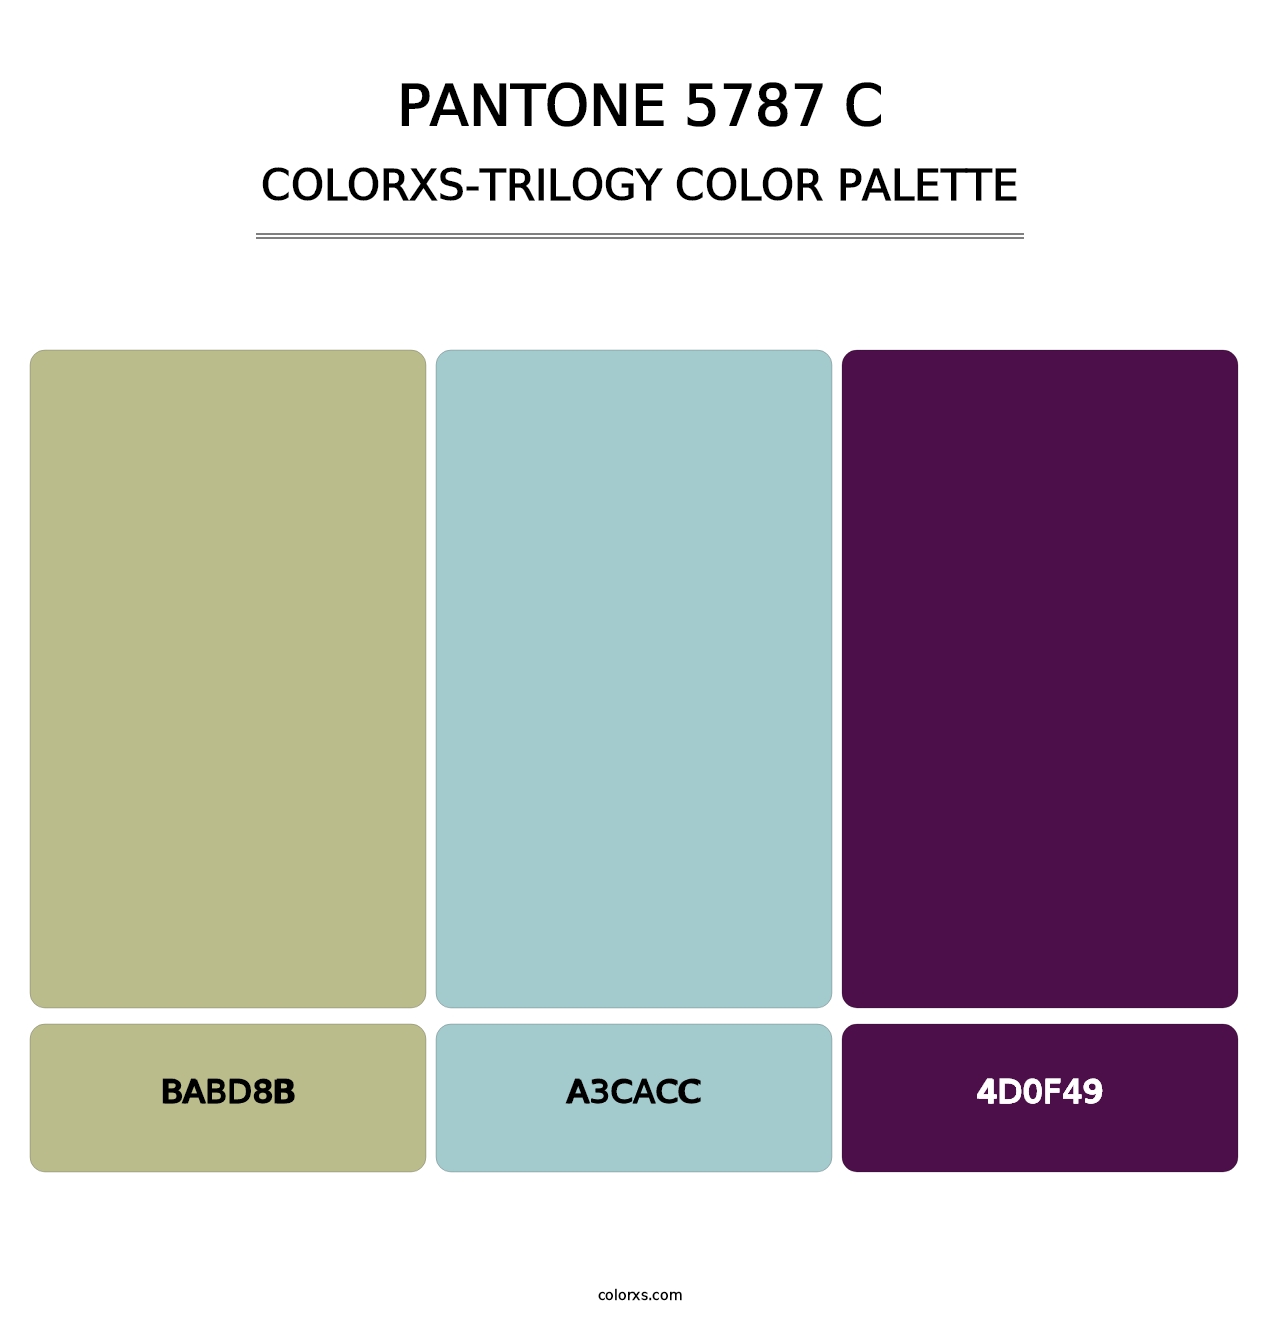 PANTONE 5787 C - Colorxs Trilogy Palette